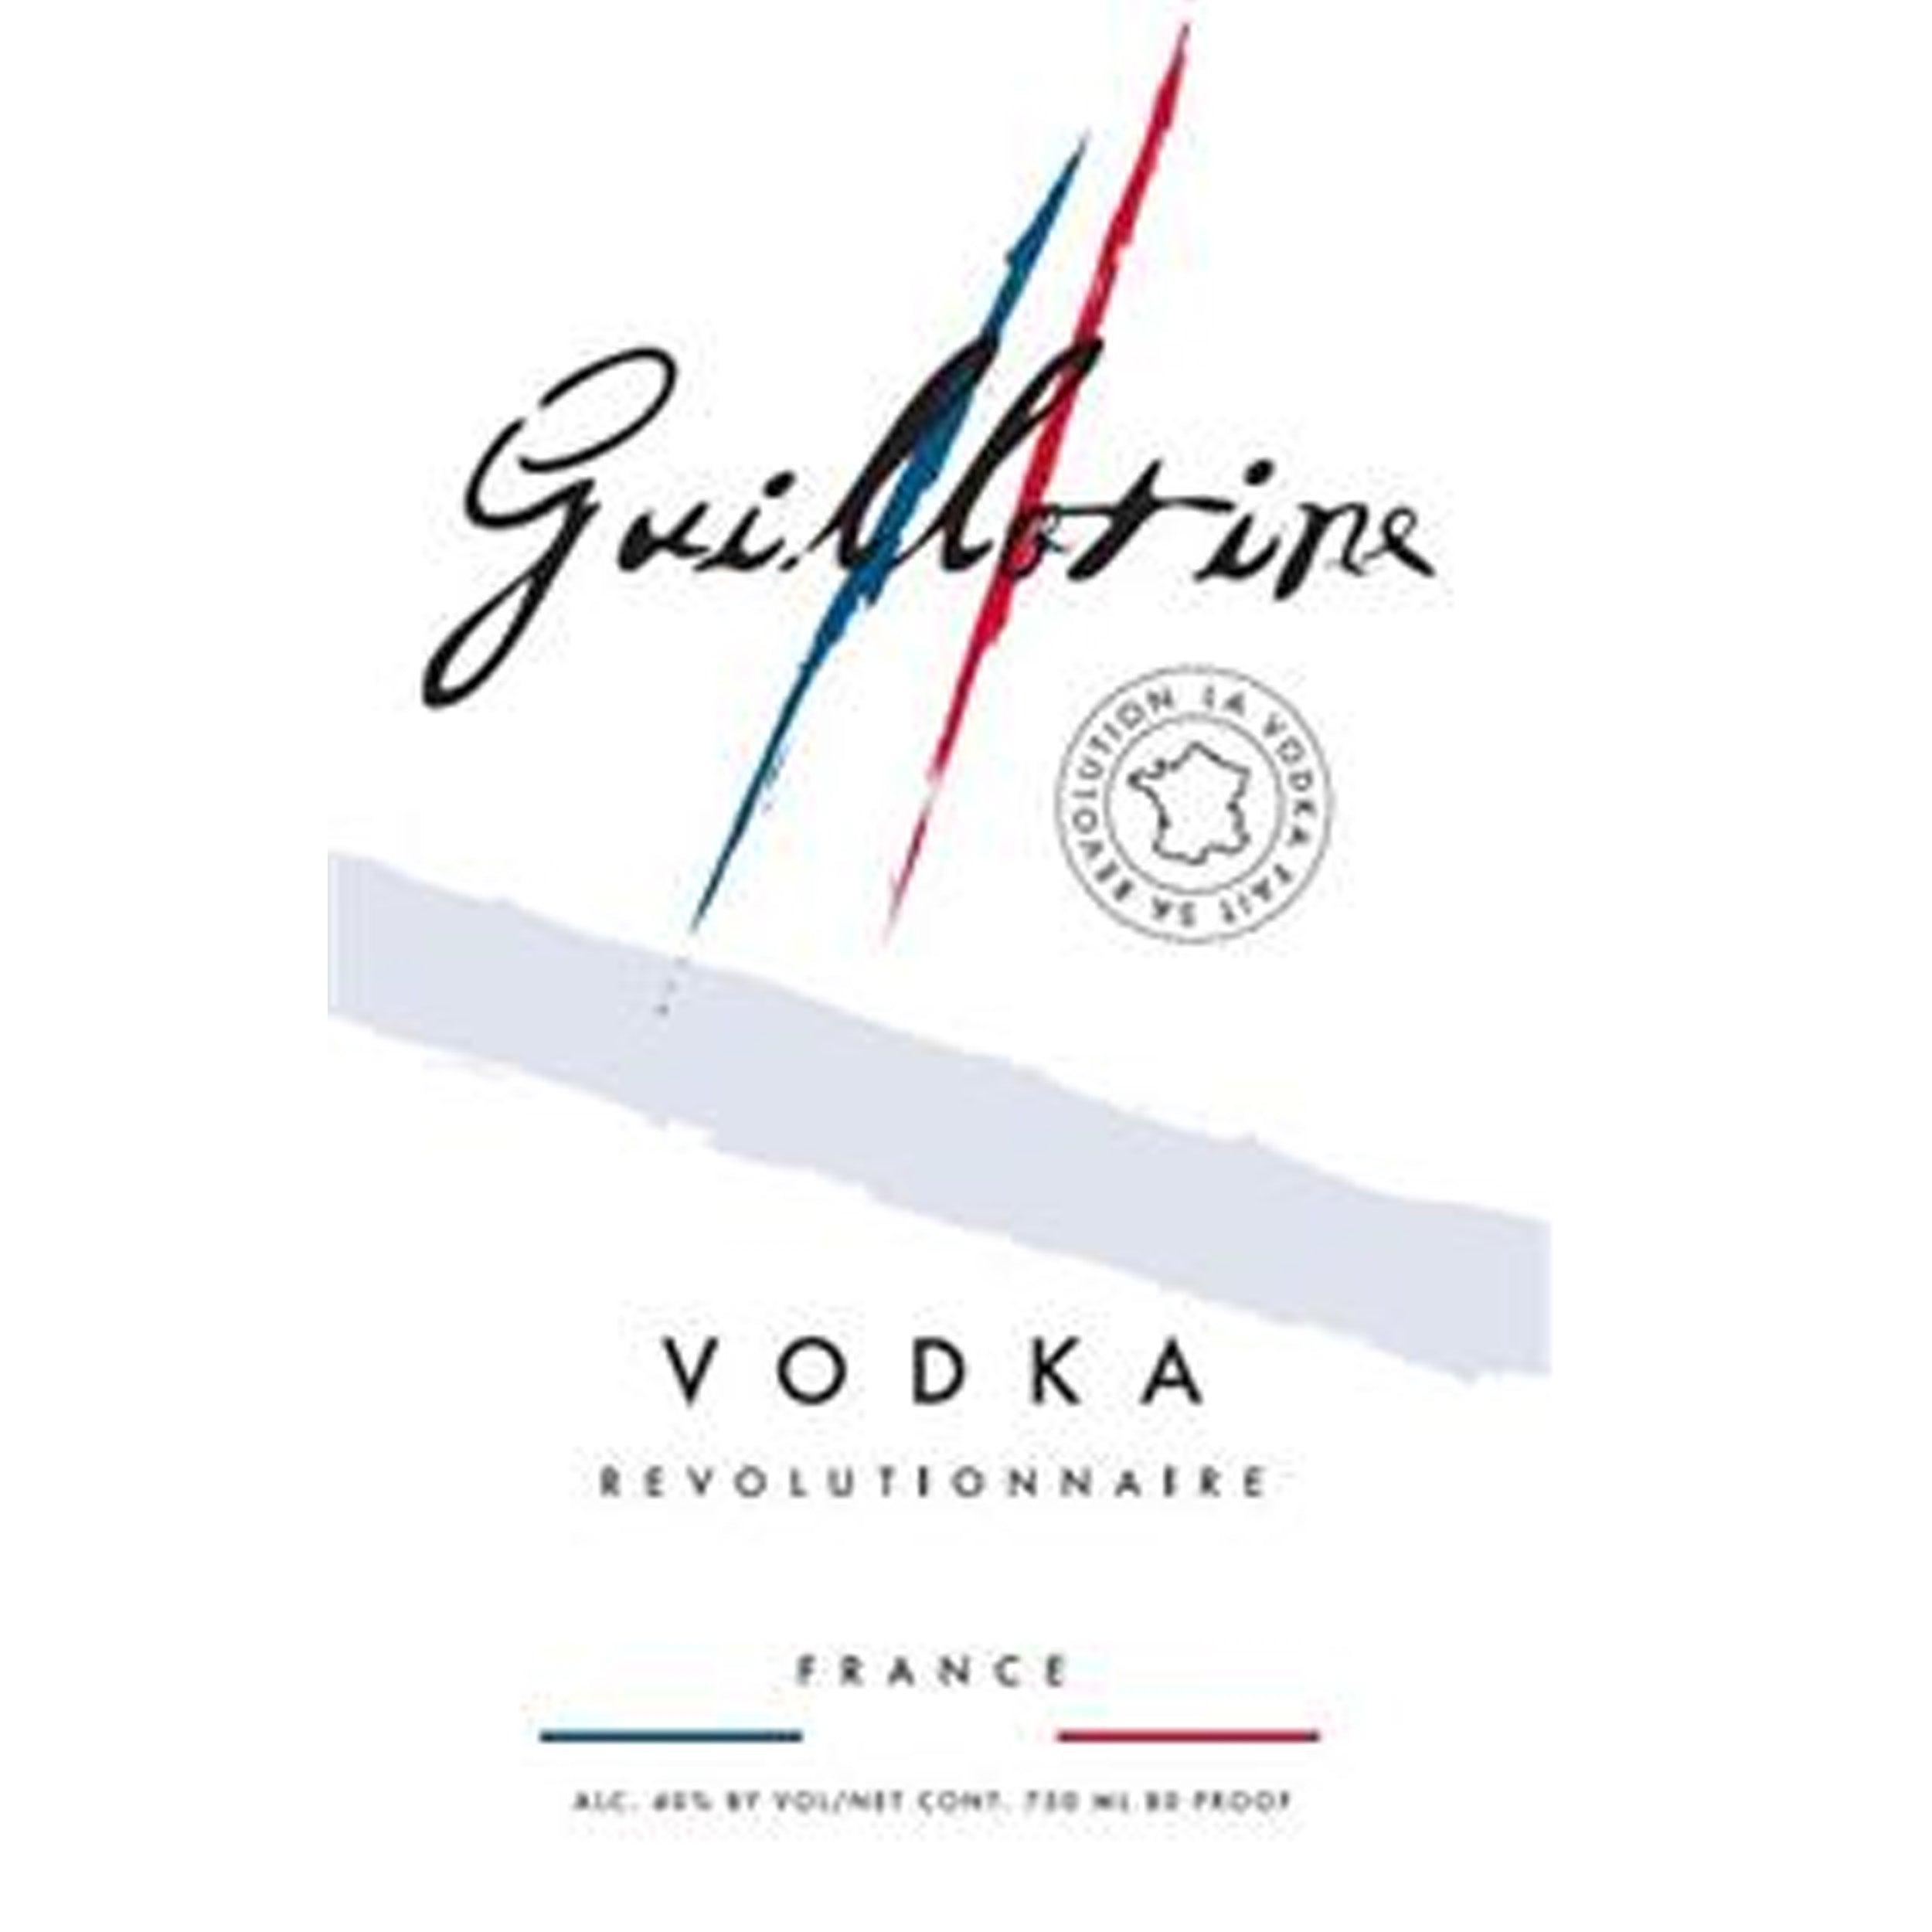 Guillotine Originale Vodka